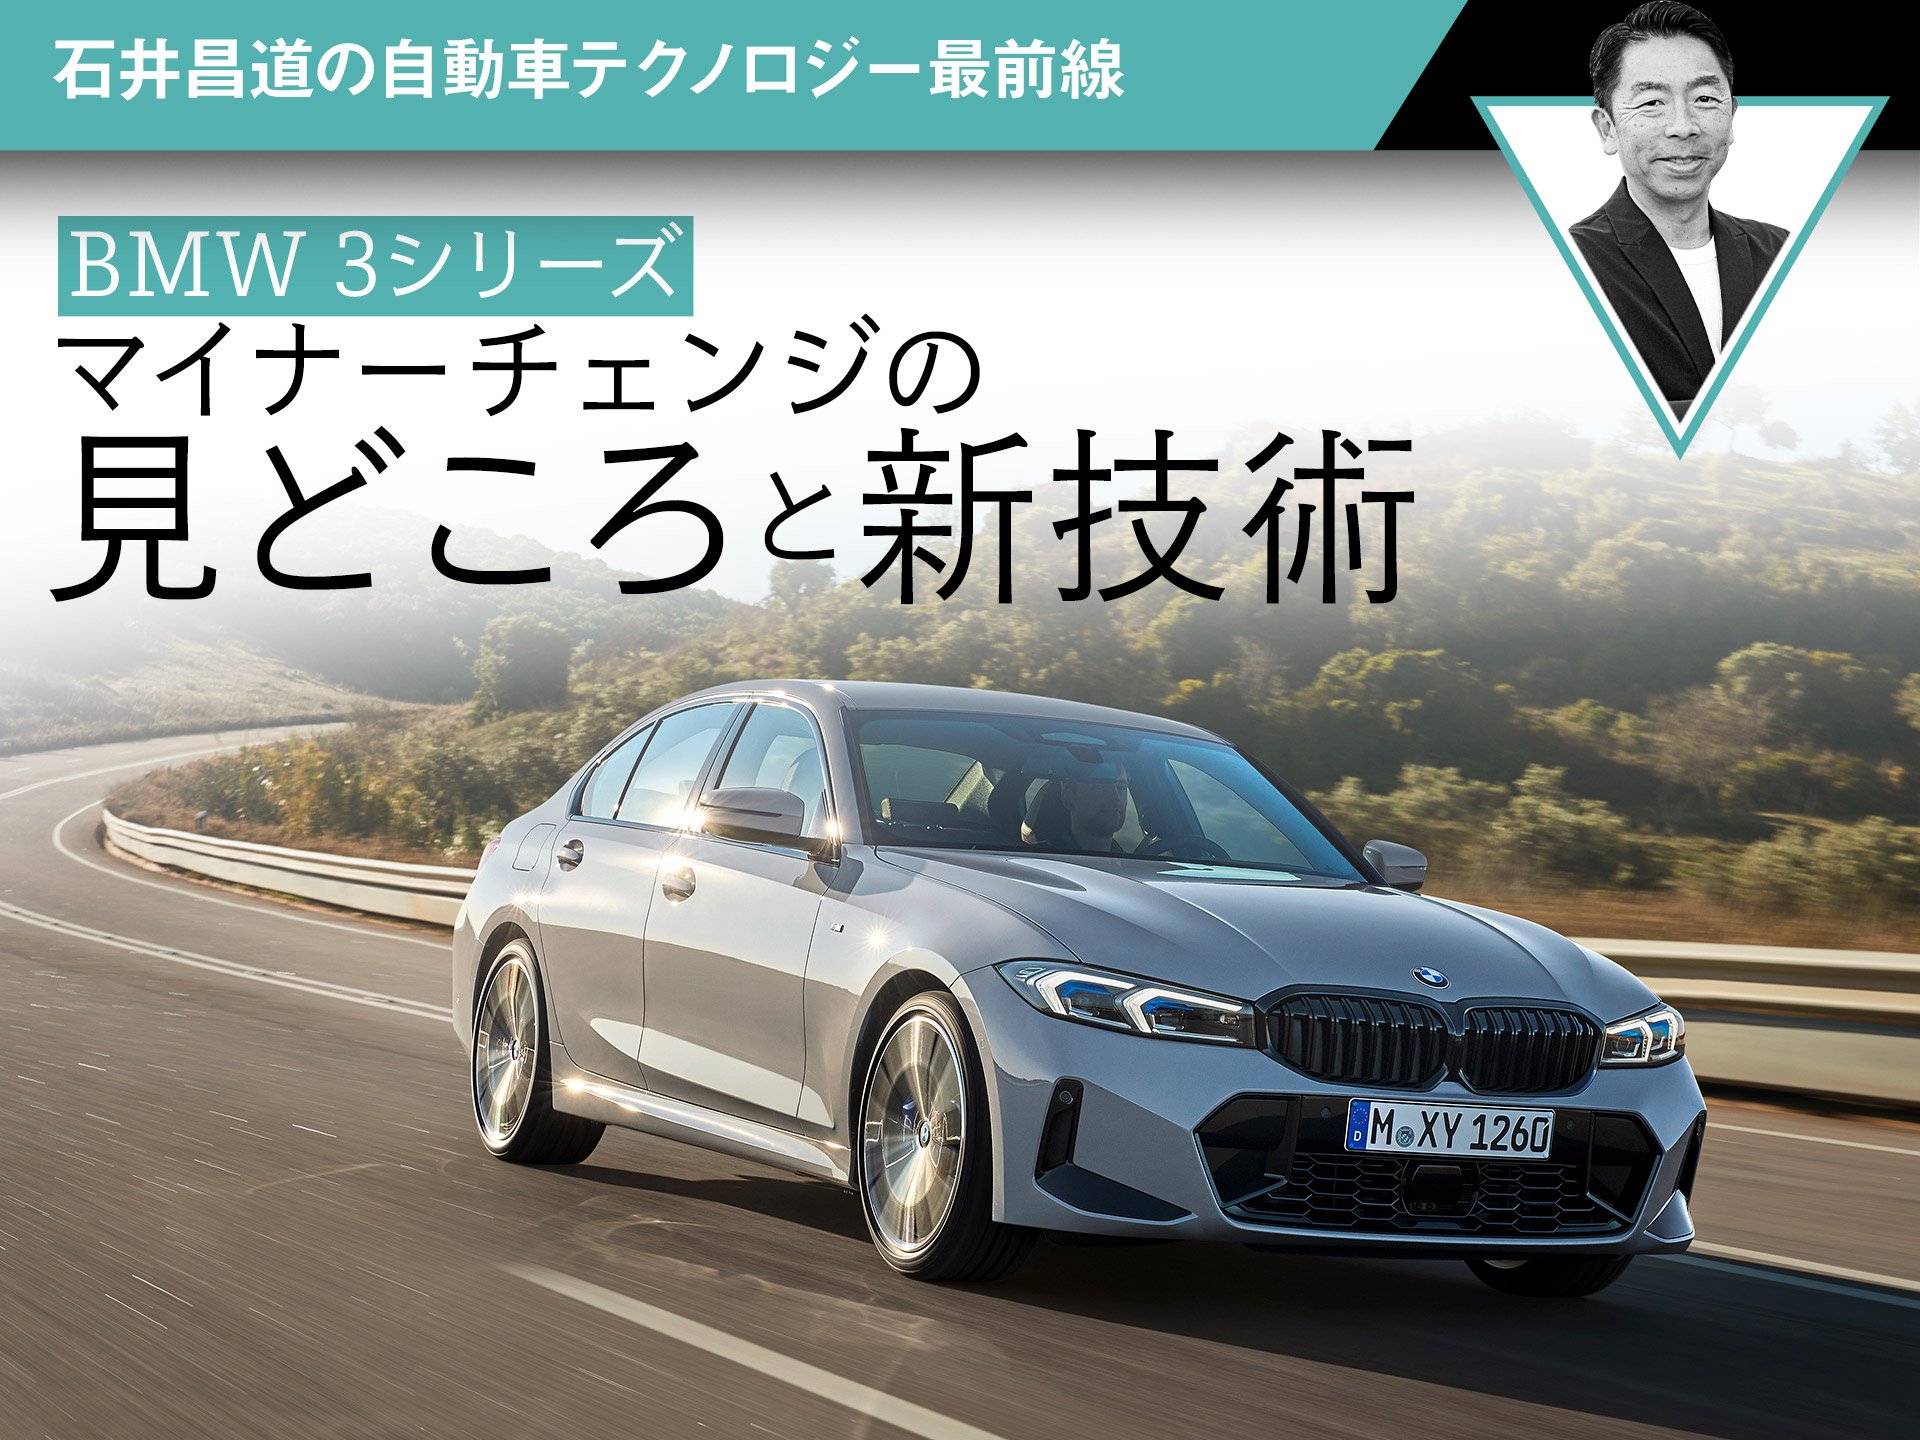 【BMW 3シリーズ】マイナーチェンジの見どころと新技術【石井昌道】